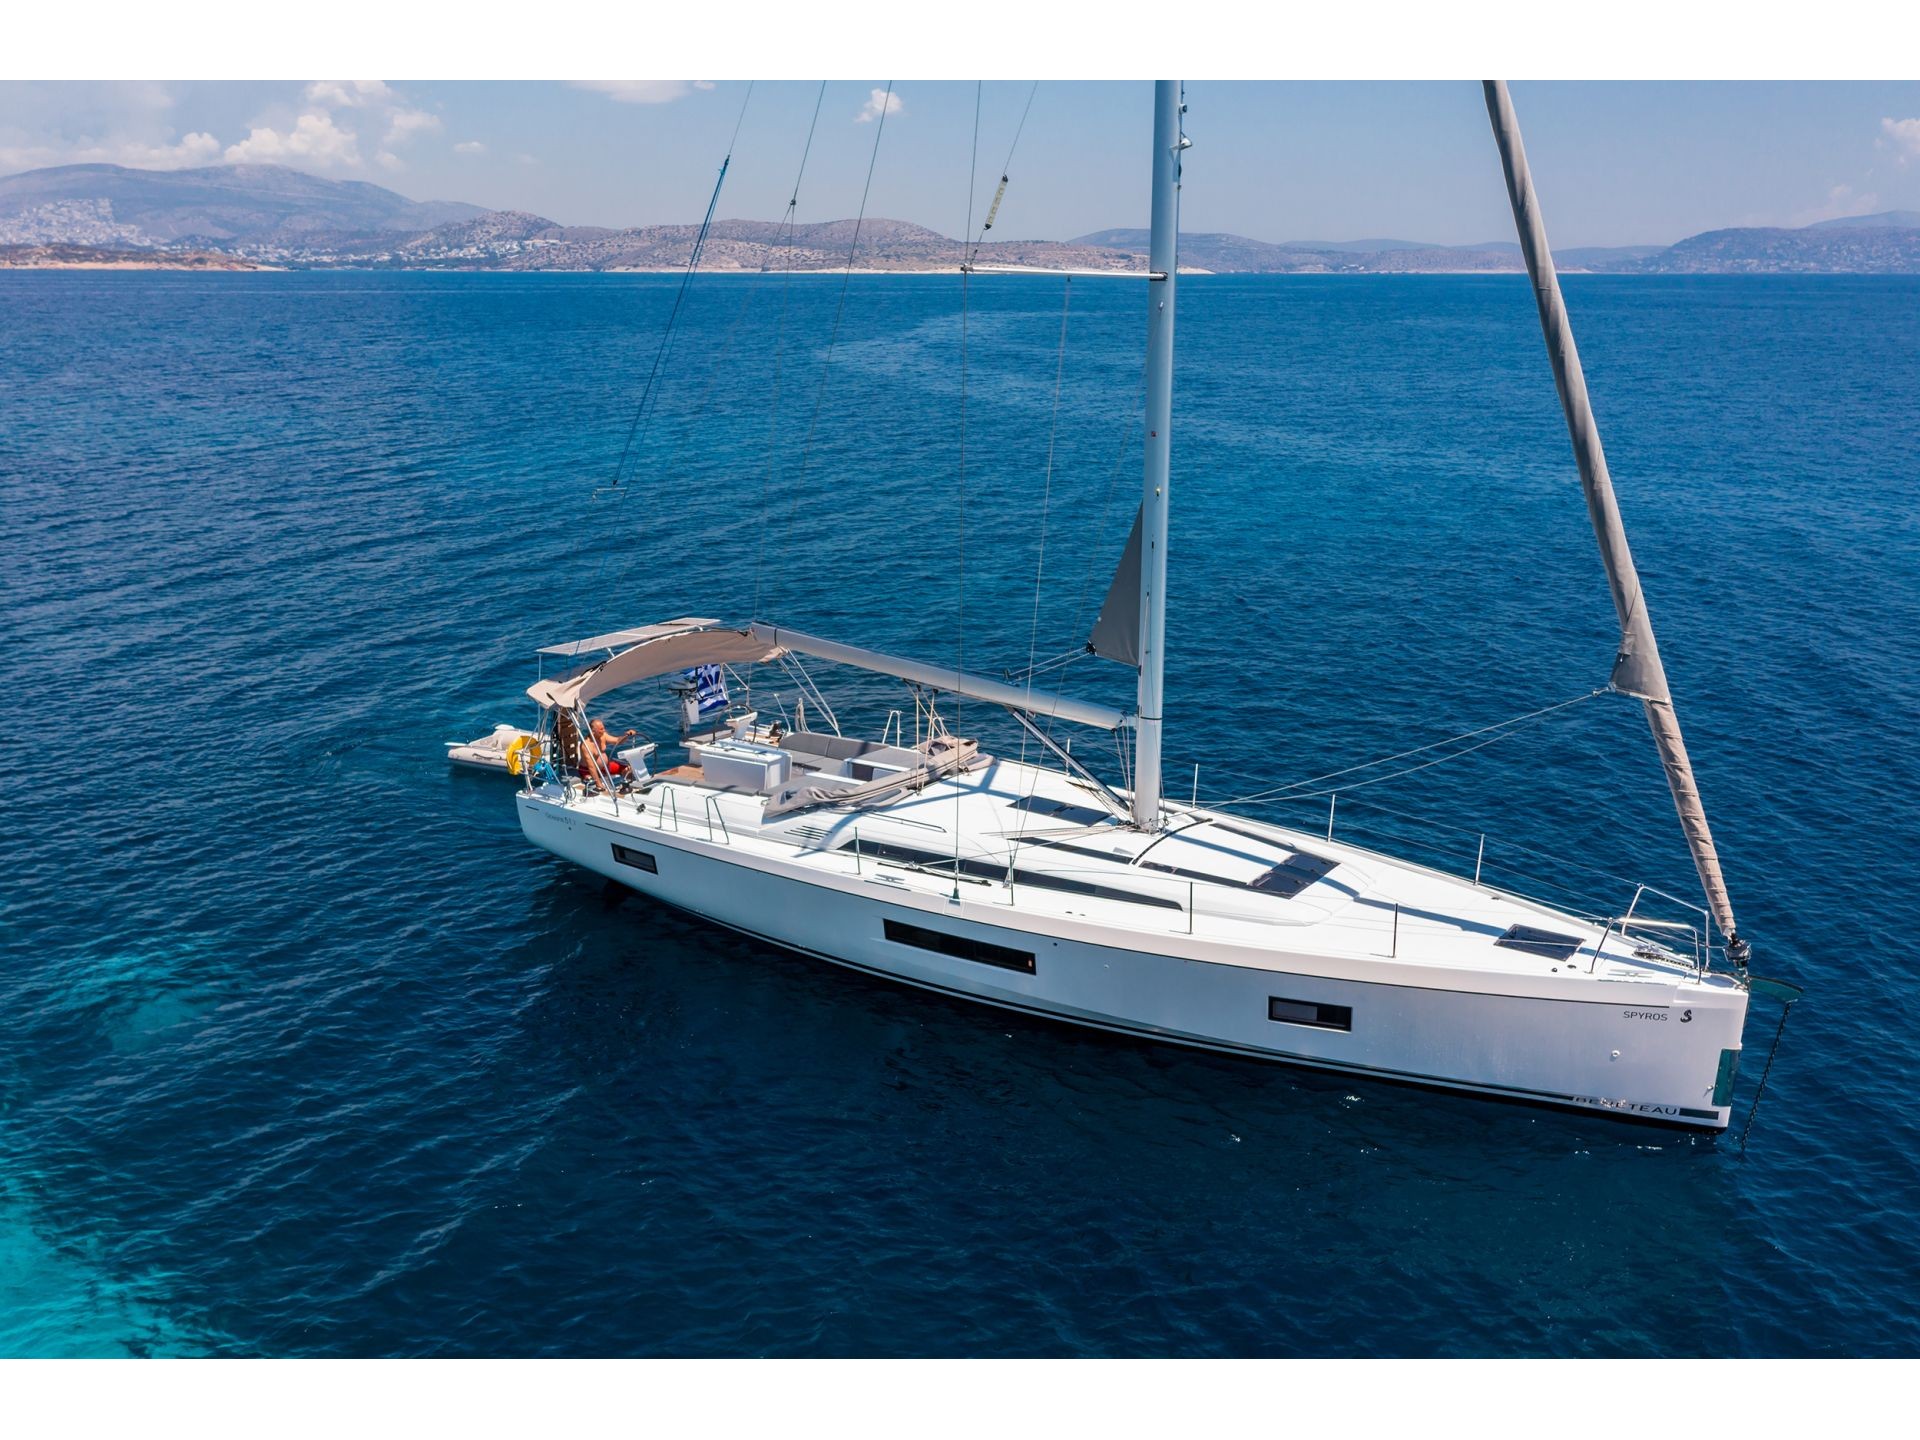 Yacht charter Oceanis 51.1 (5+1 cab) A/C & GEN - Greece, Attica, will